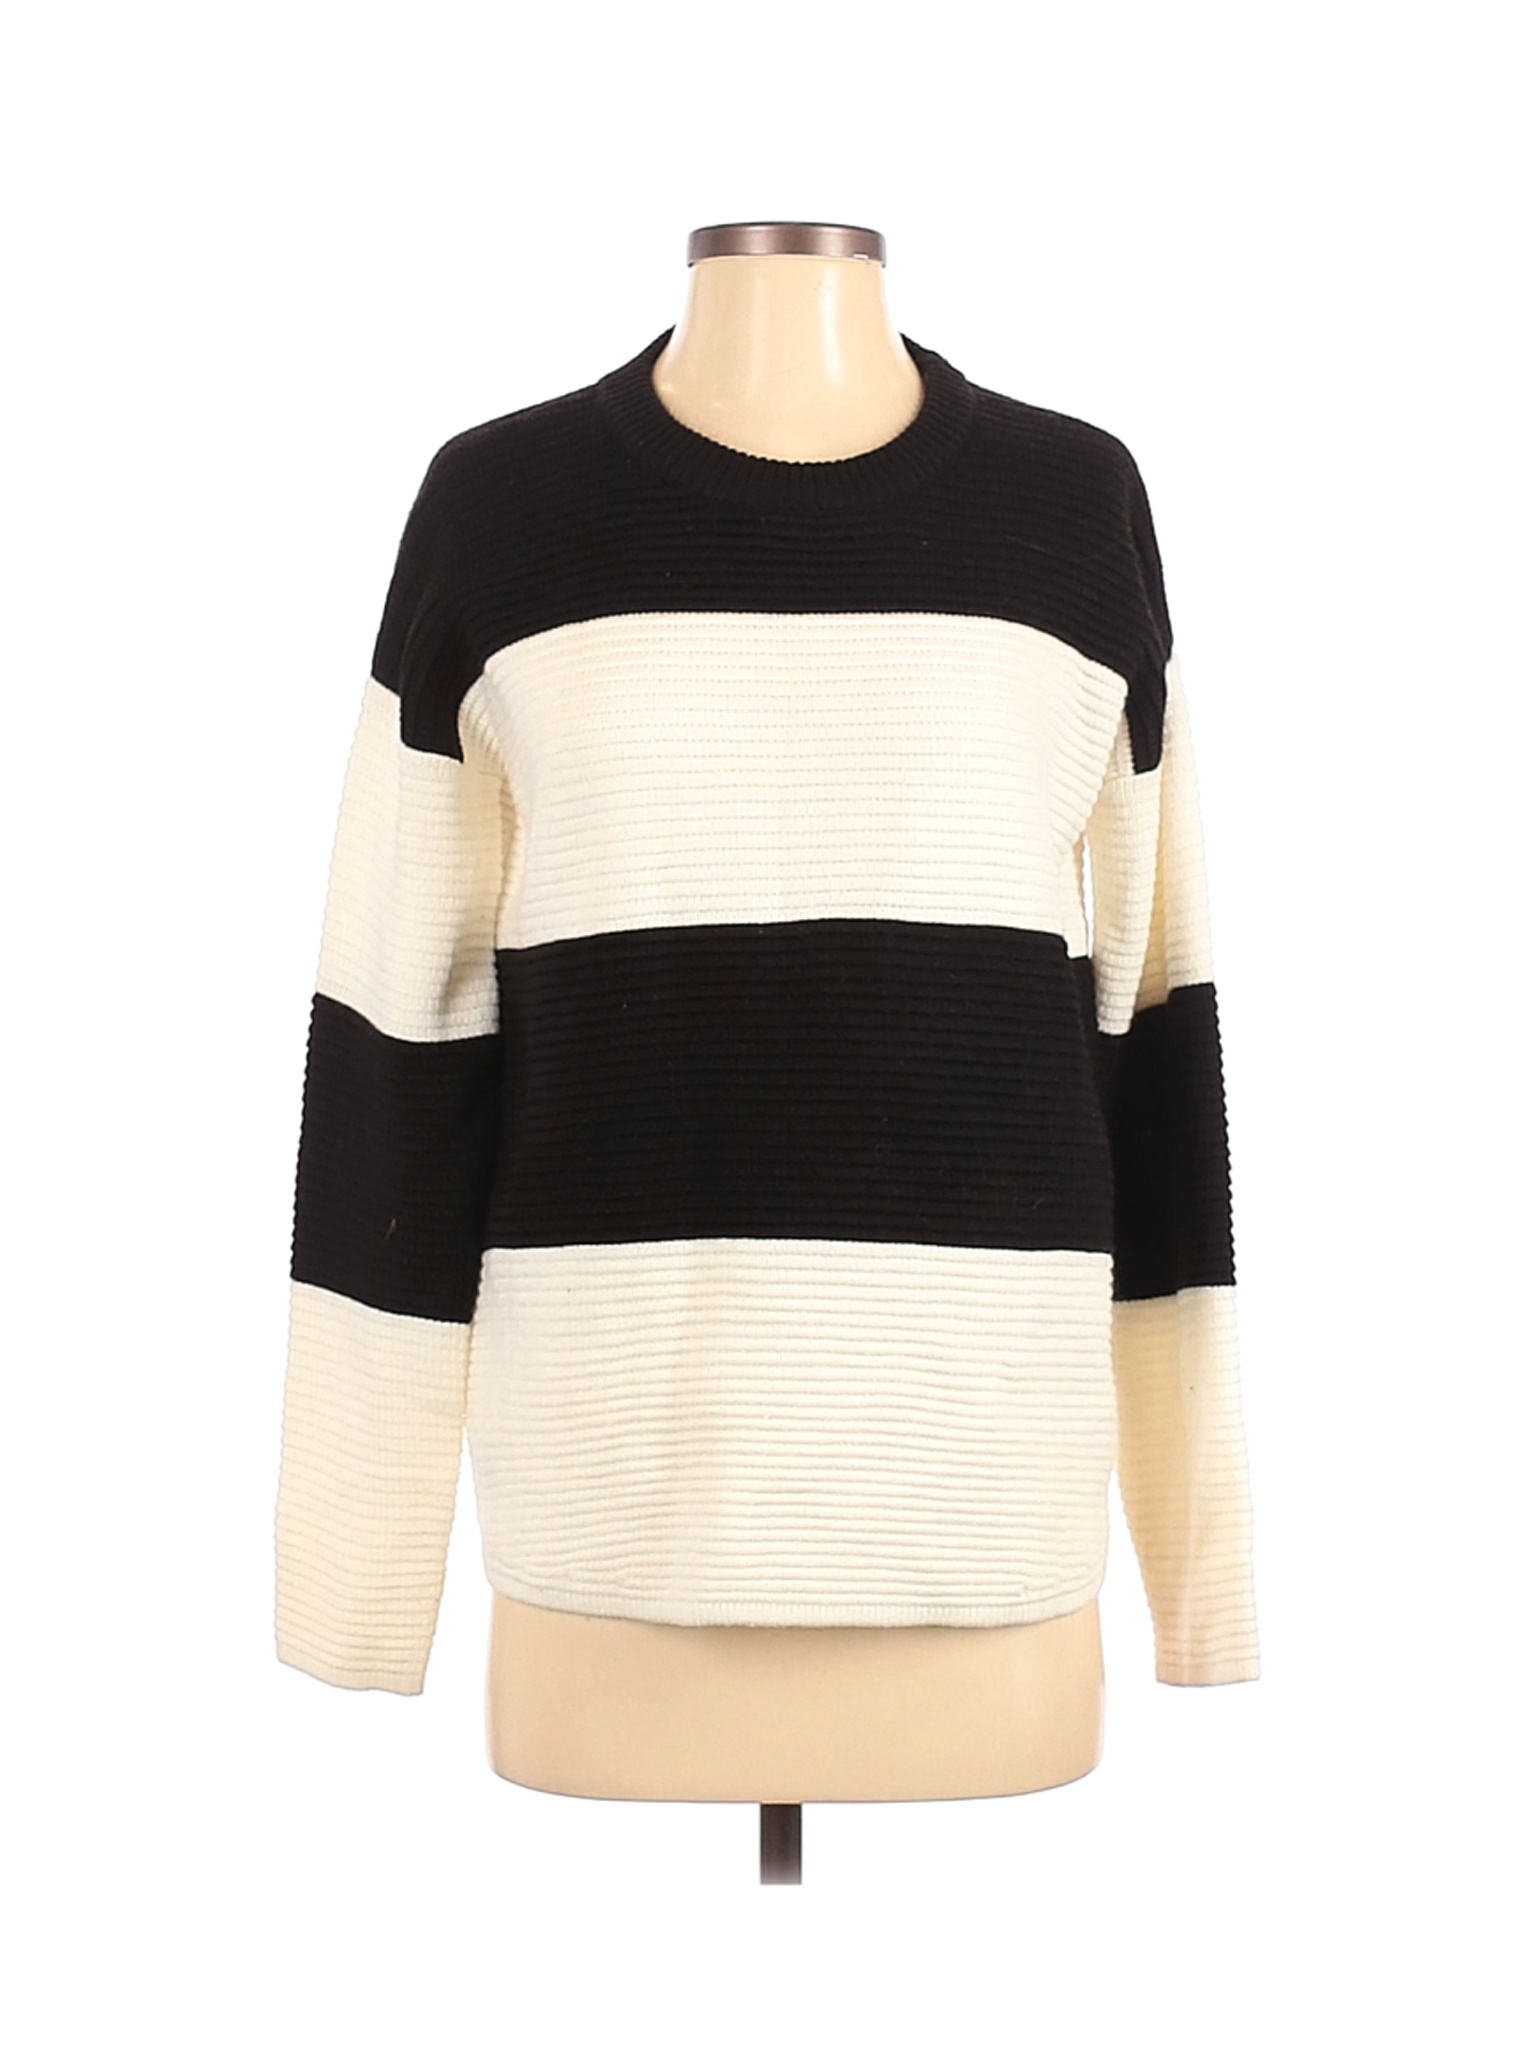 Forever 21 Women Black Pullover Sweater S | eBay